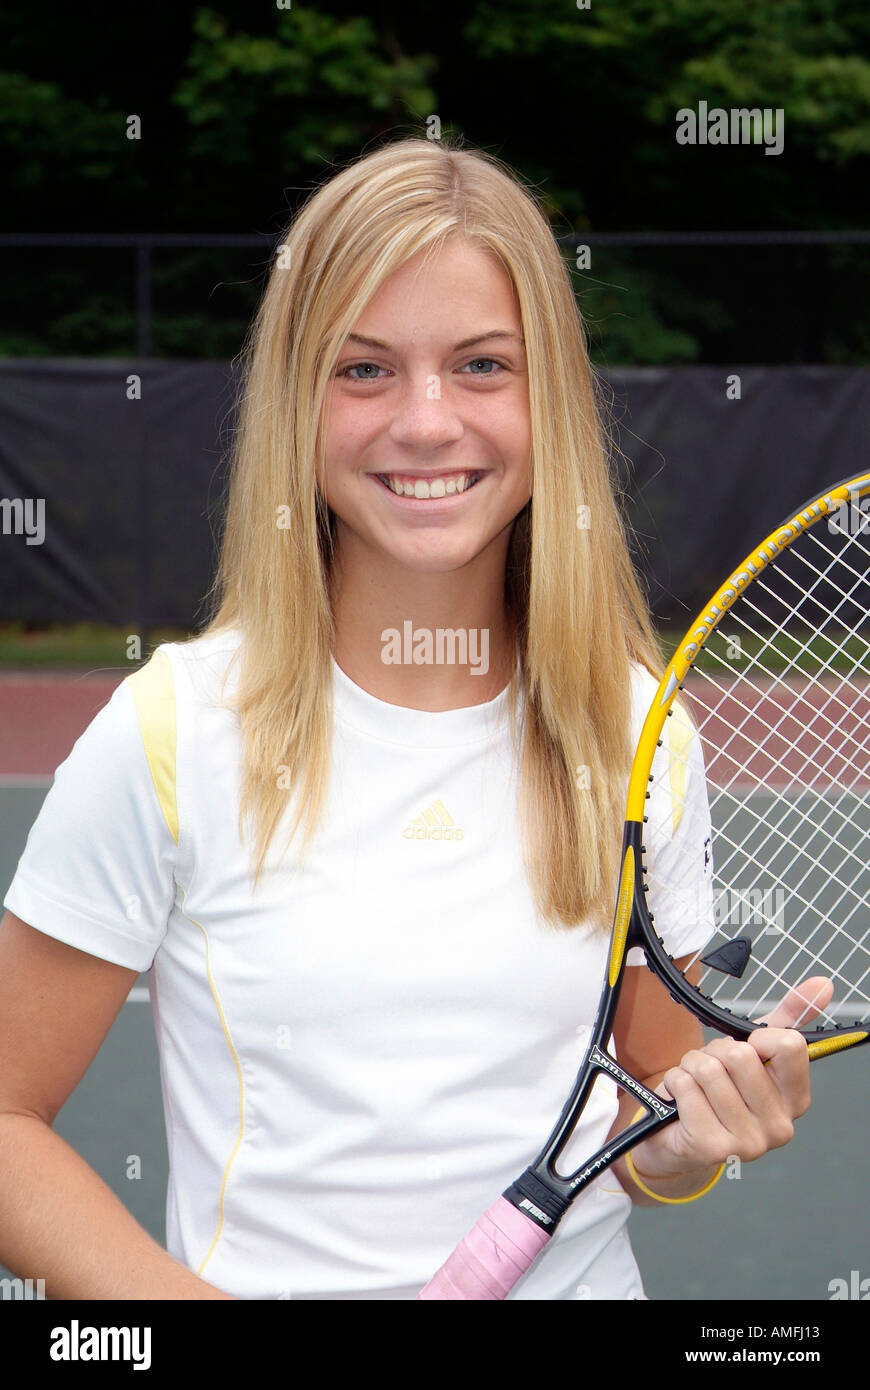 Weibliche High School Tennisspieler Stockfoto